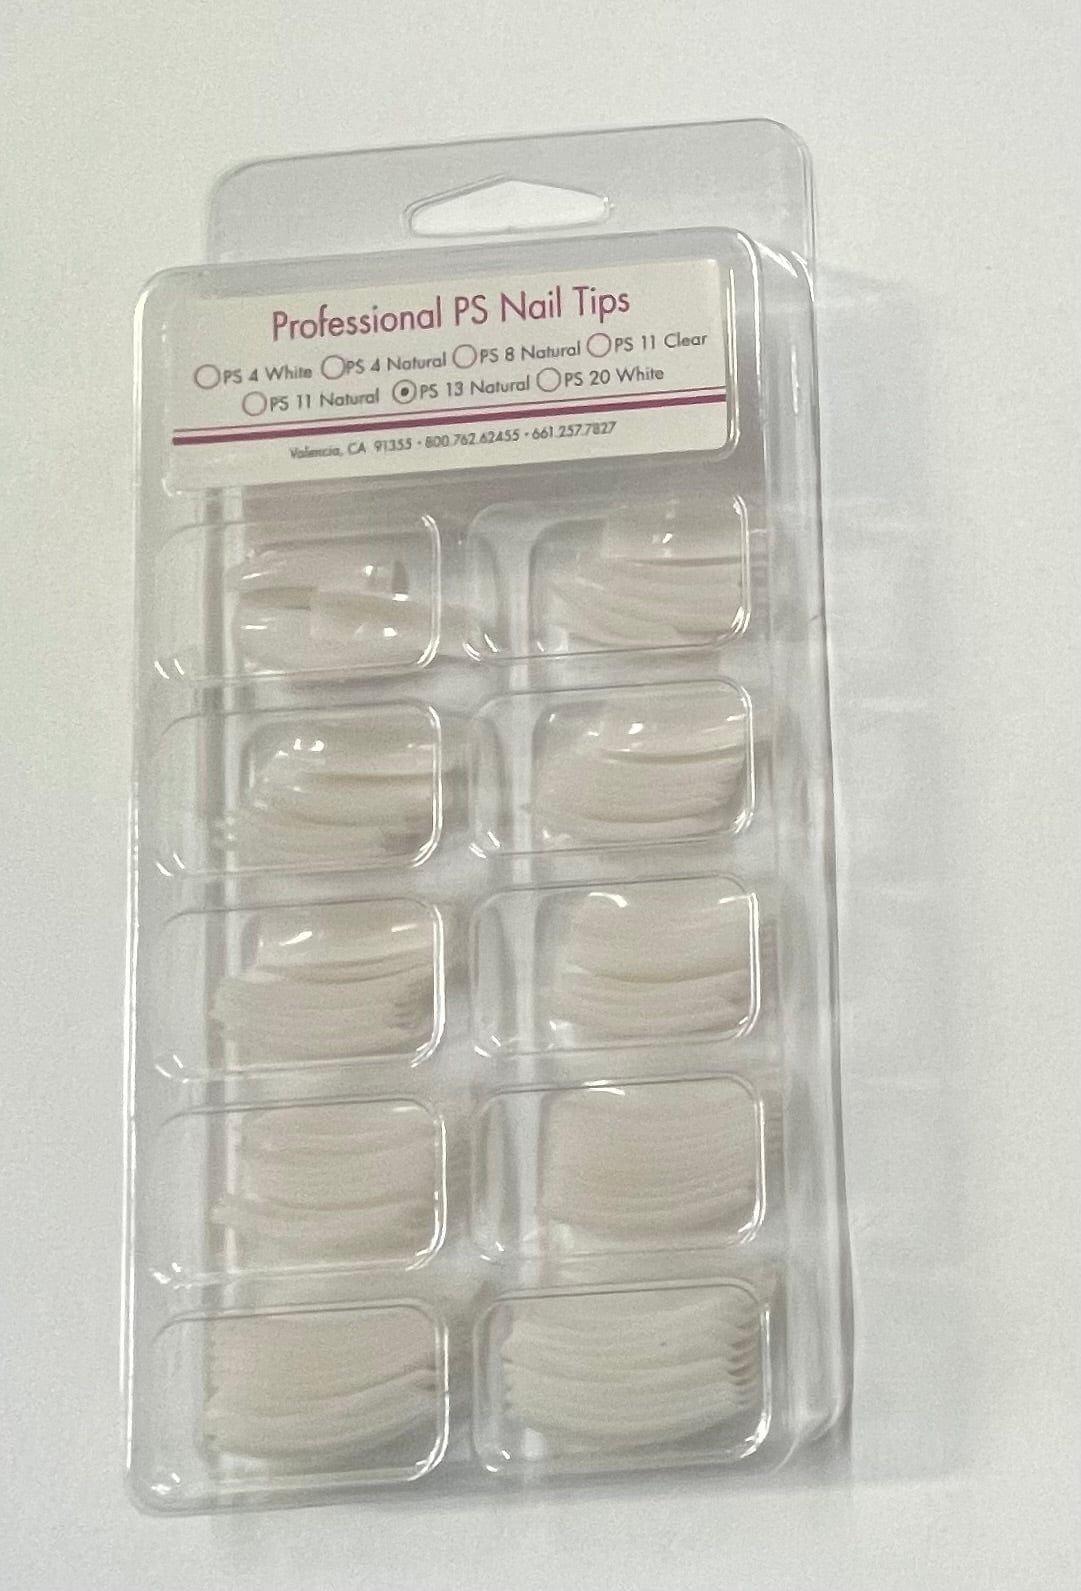 Nail Tips Star Nail Economy PS Professional Nail Tips Assorted 100 pk Nail Tips